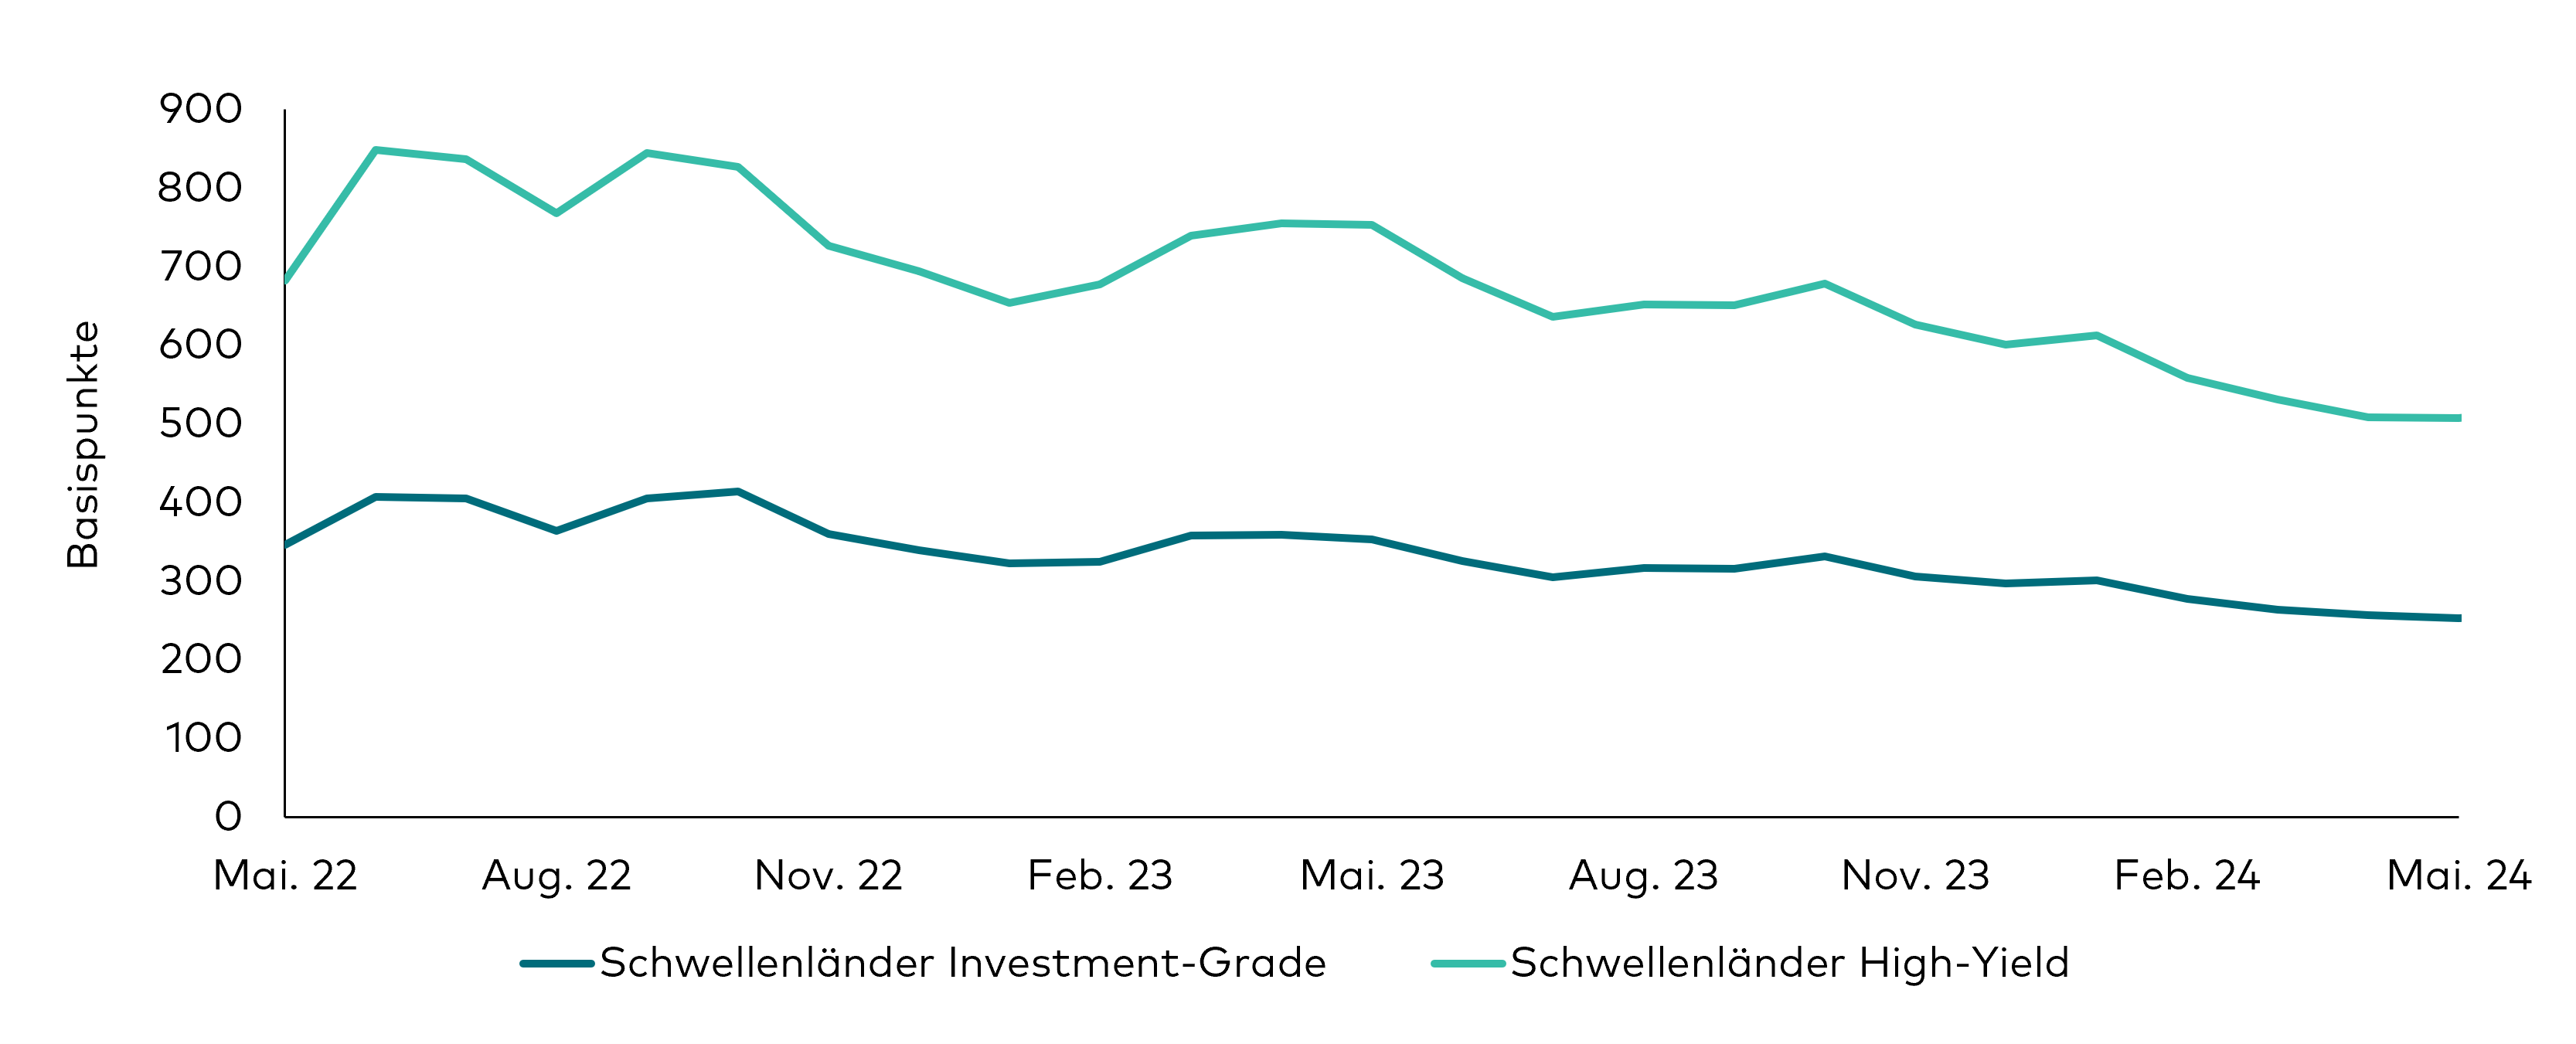 Ein Liniendiagramm zeigt die historische Entwicklung der Risikoaufschläge von Investment-Grade- und High-Yield-Anleihen aus Schwellenländern während der 24 Monate bis zum 31. Mai 2024. Seit Jahresbeginn sind die Risikoaufschläge rückläufig. 